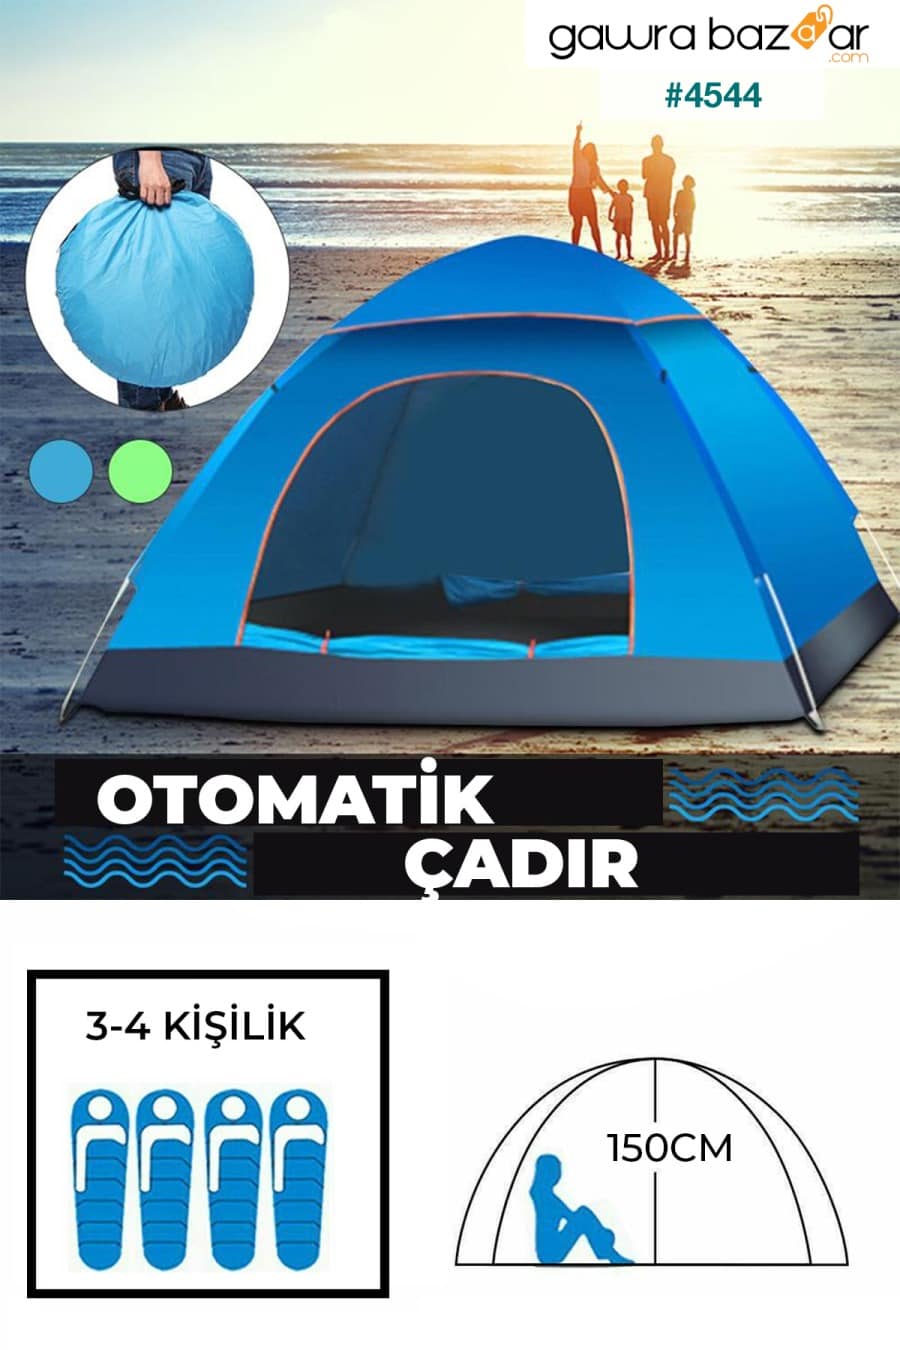 خيمة مقاومة للماء ذات فتح تلقائي للهواء تتسع لـ 4 أشخاص Pratikko 0